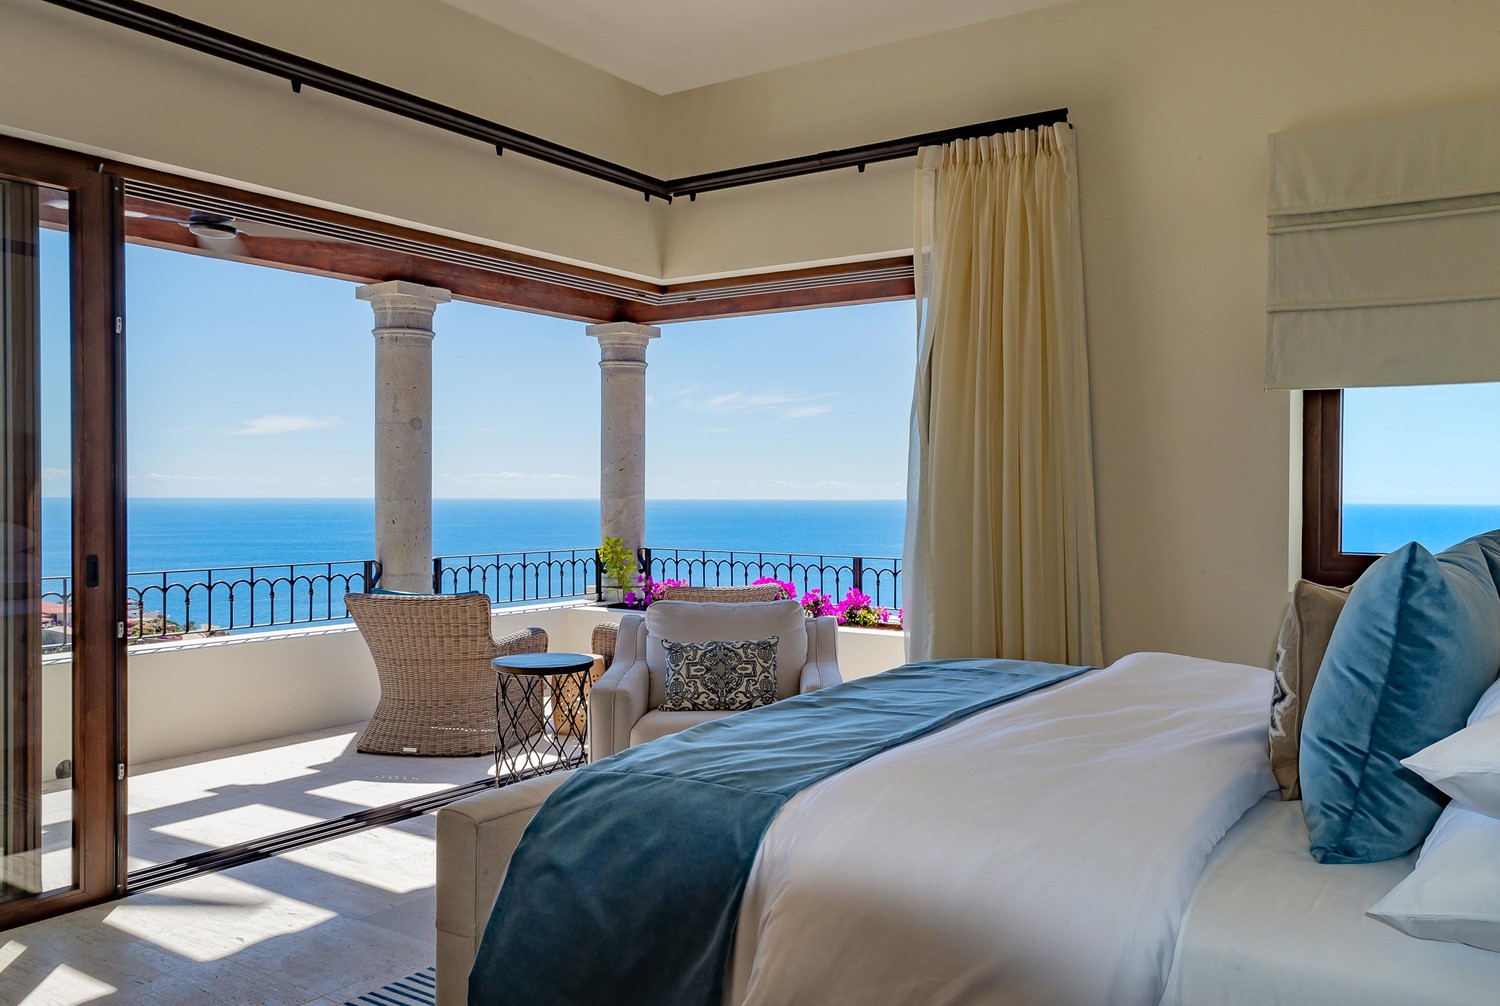 Casa Stella luxury vacation rental in Cabo San Lucas Mexico ocean views